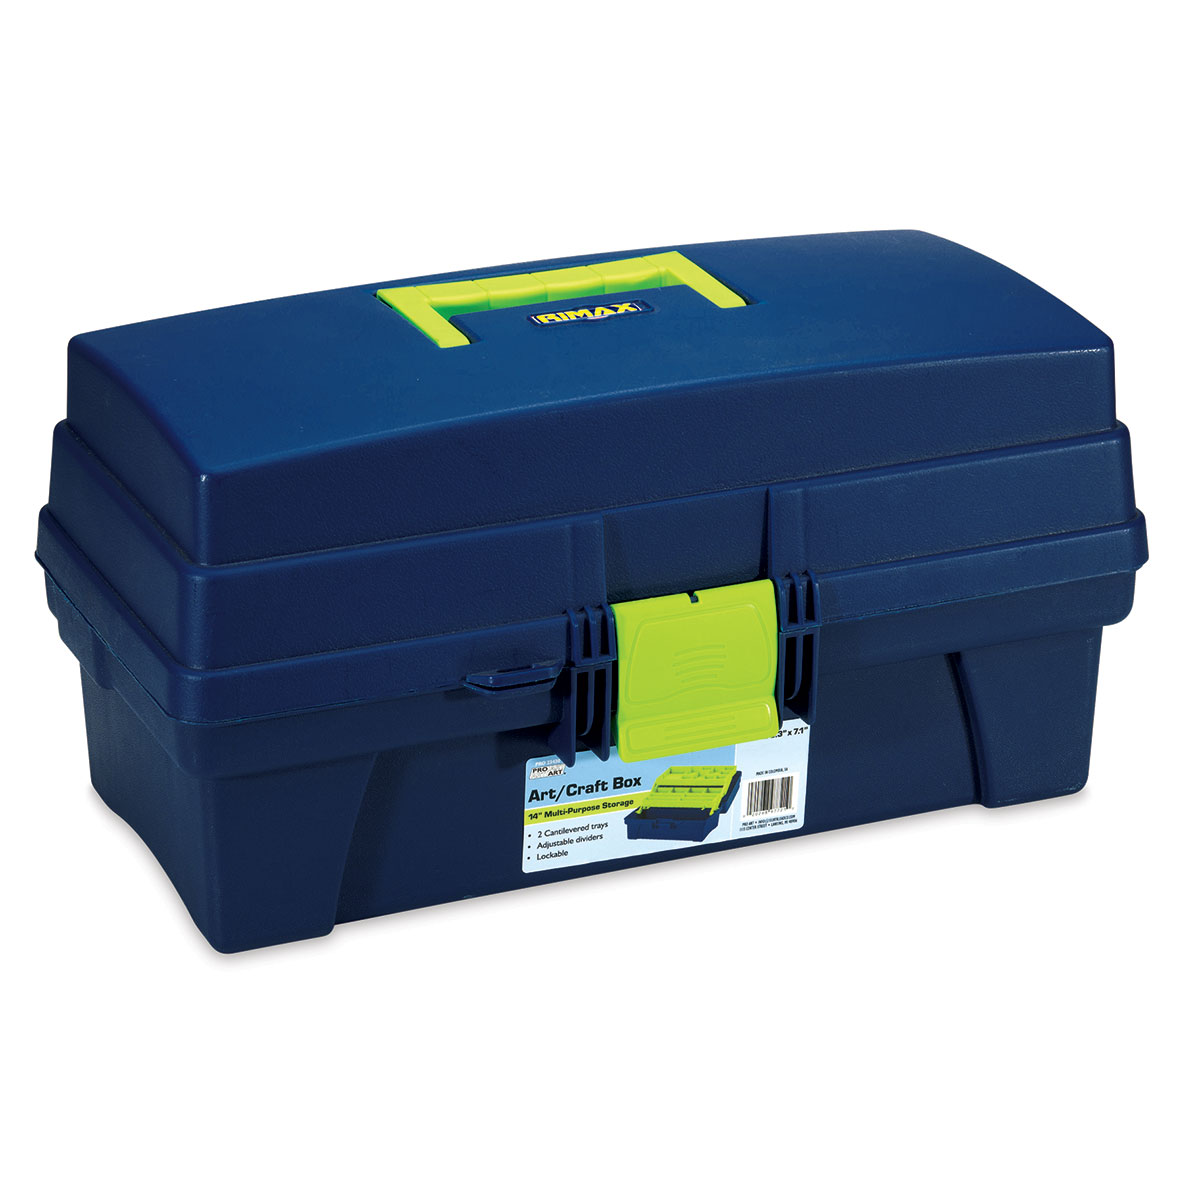 Pro Art Plastic Box - 8' x 7' x 14', Blue/Green Trim, 2 Tray